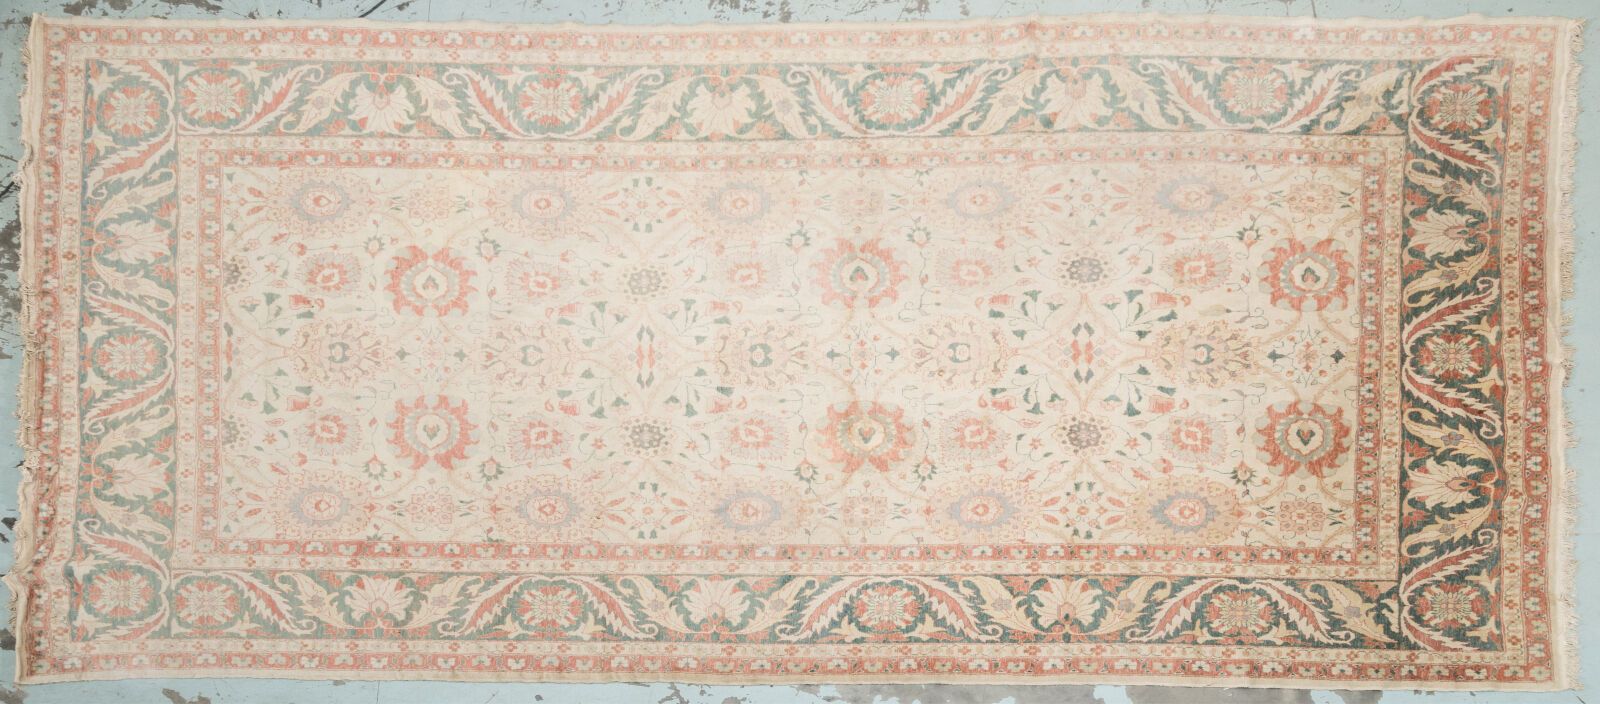 Null 非常大的手工打结东方羊毛地毯，底色为橙红色、奶油色和绿色，并有花卉装饰。尺寸为 360 x 780 厘米。 
磨损